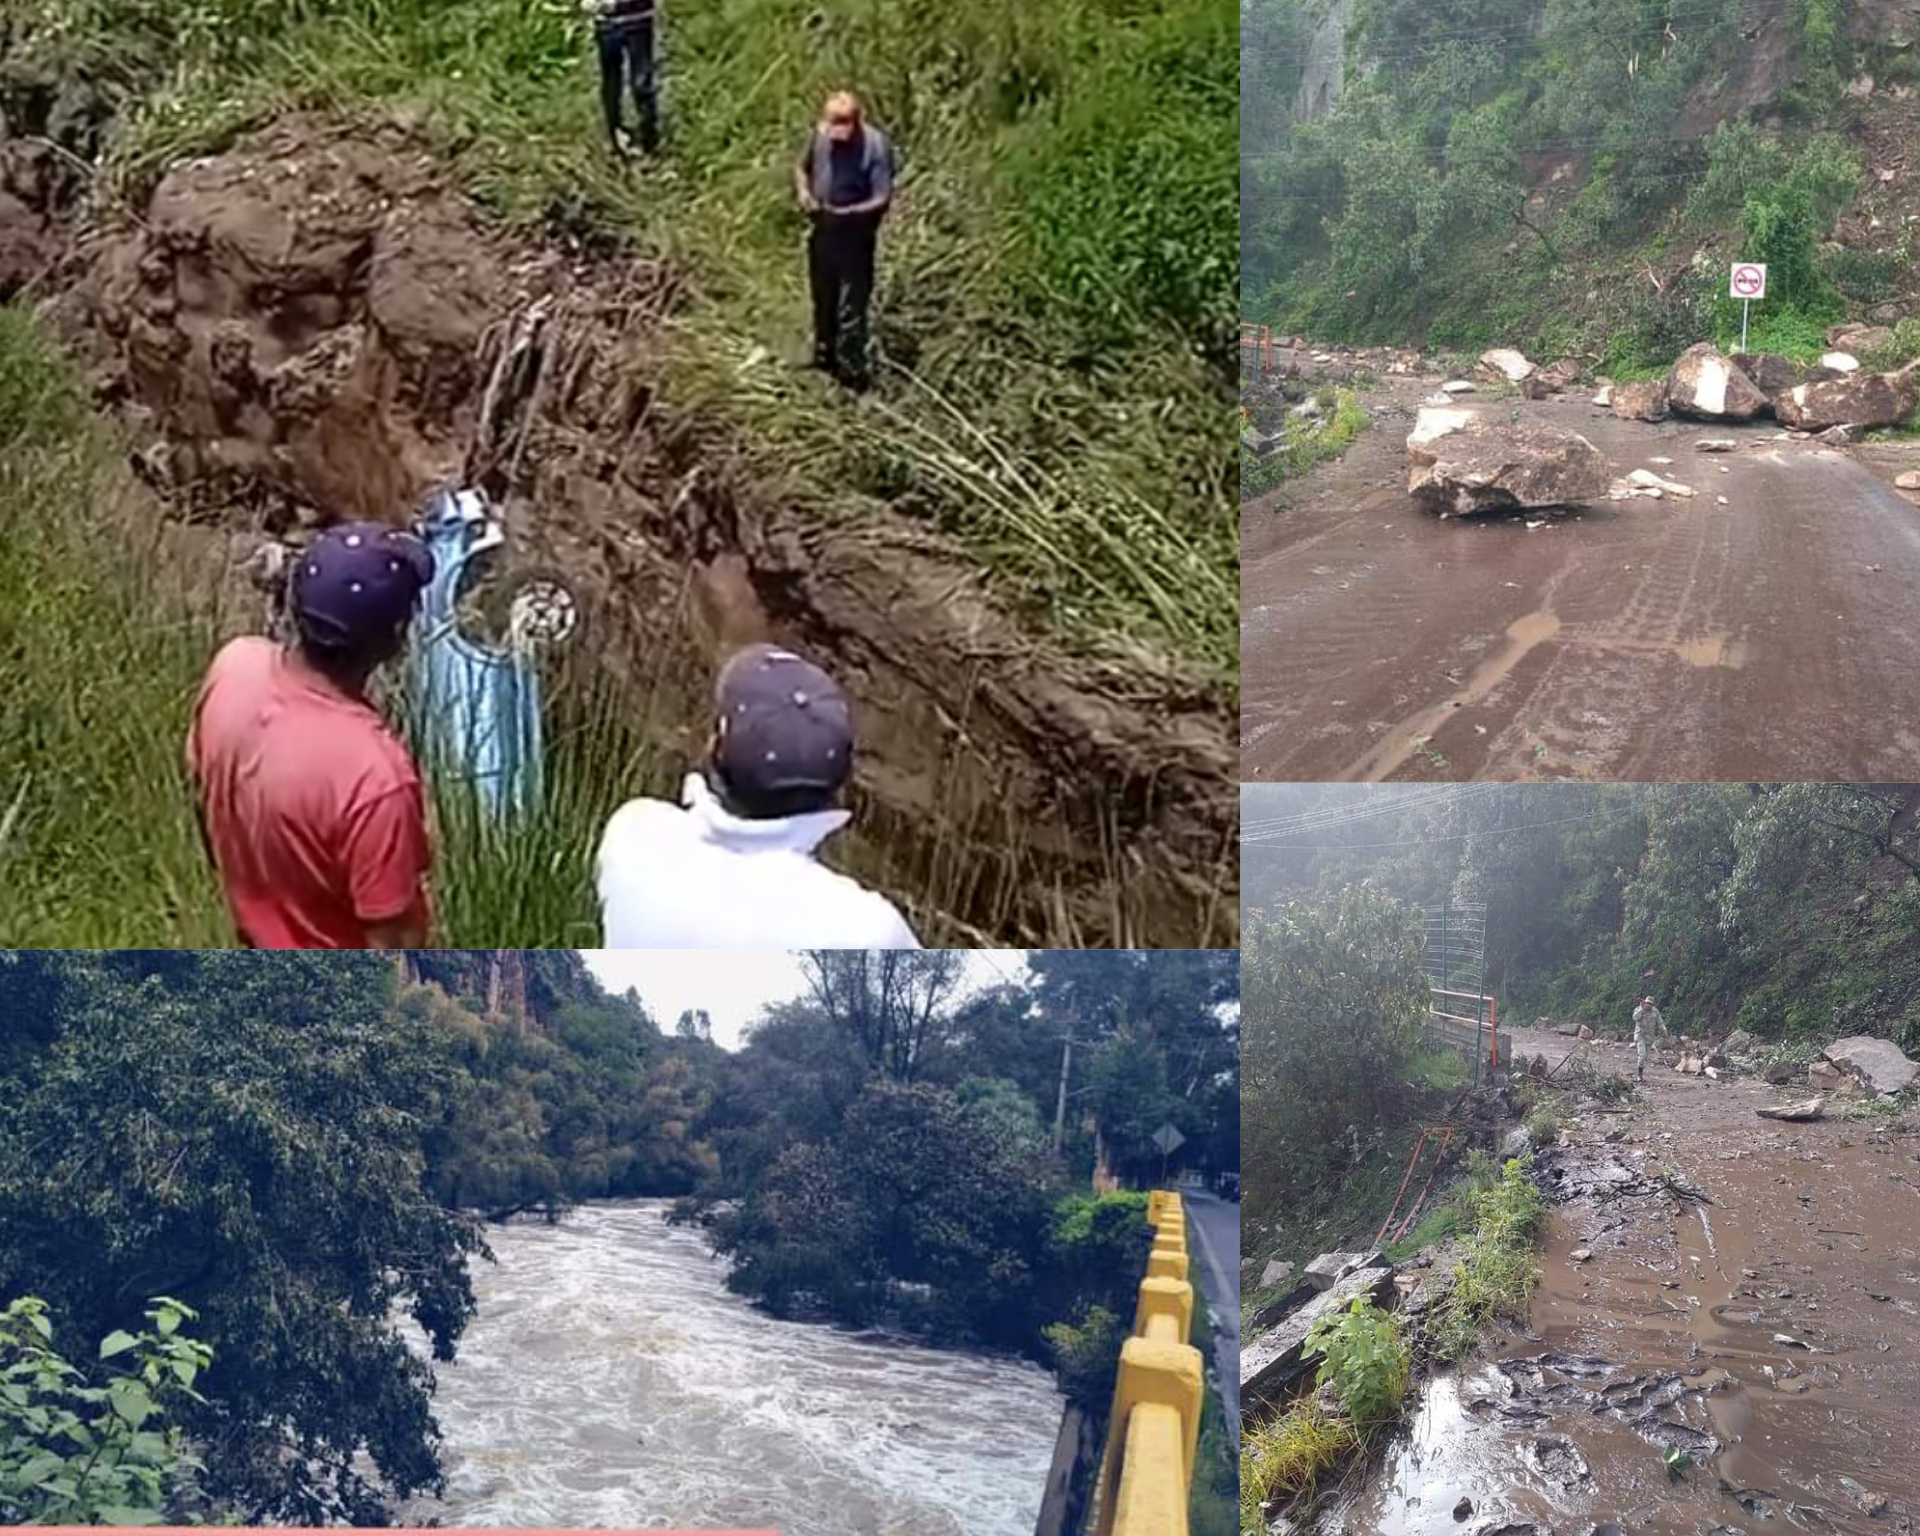 Una persona muerta y afectaciones por fuertes lluvias en Temascalcingo #regionmx